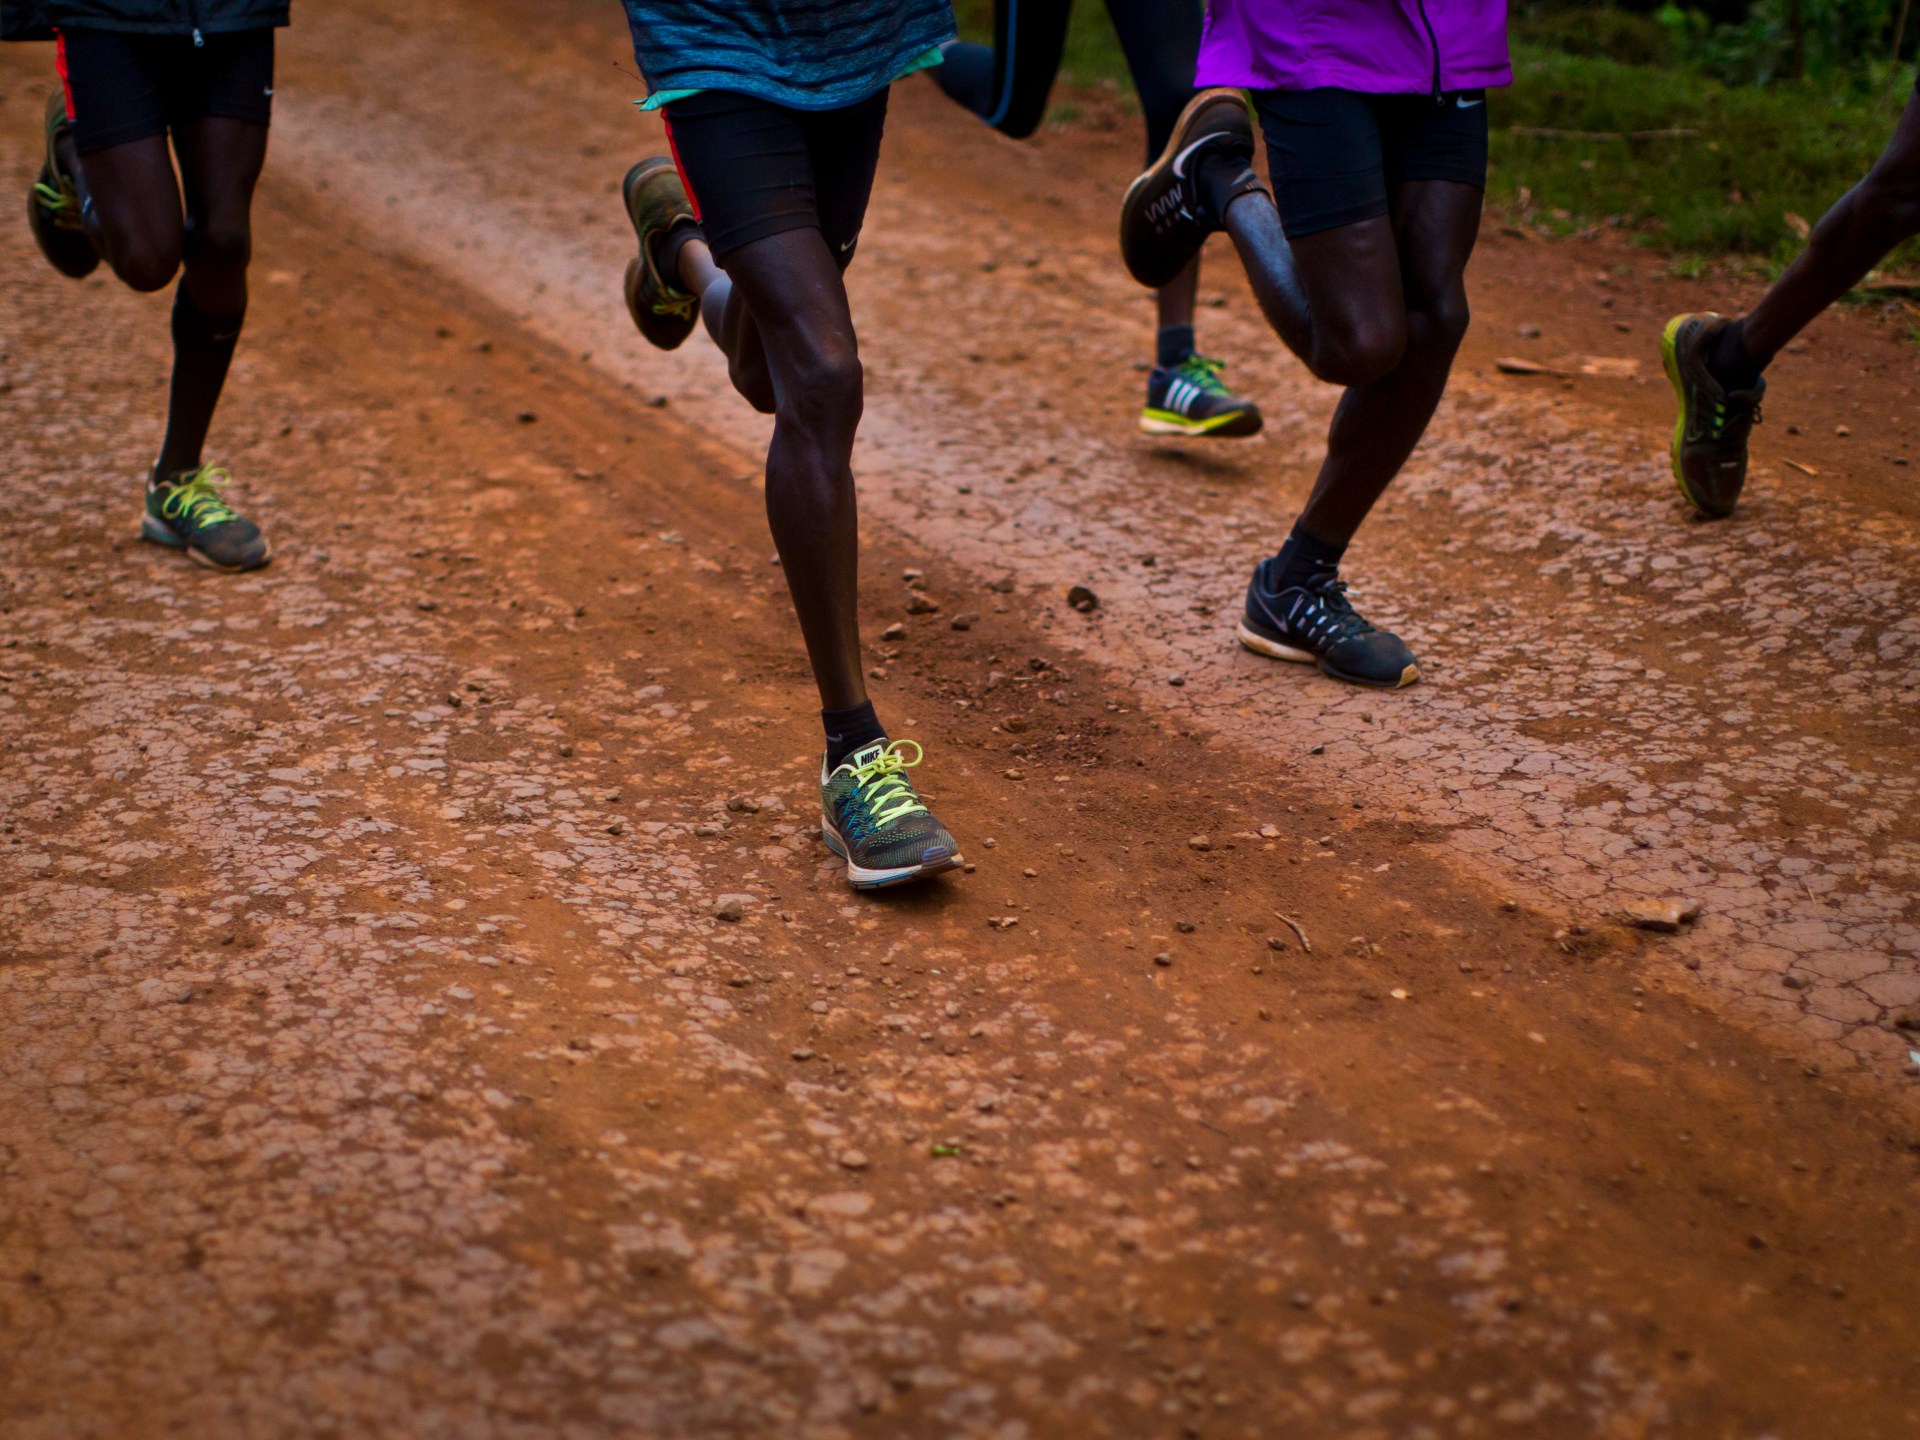 Kenya faces menace of athletics ban amid doping disaster